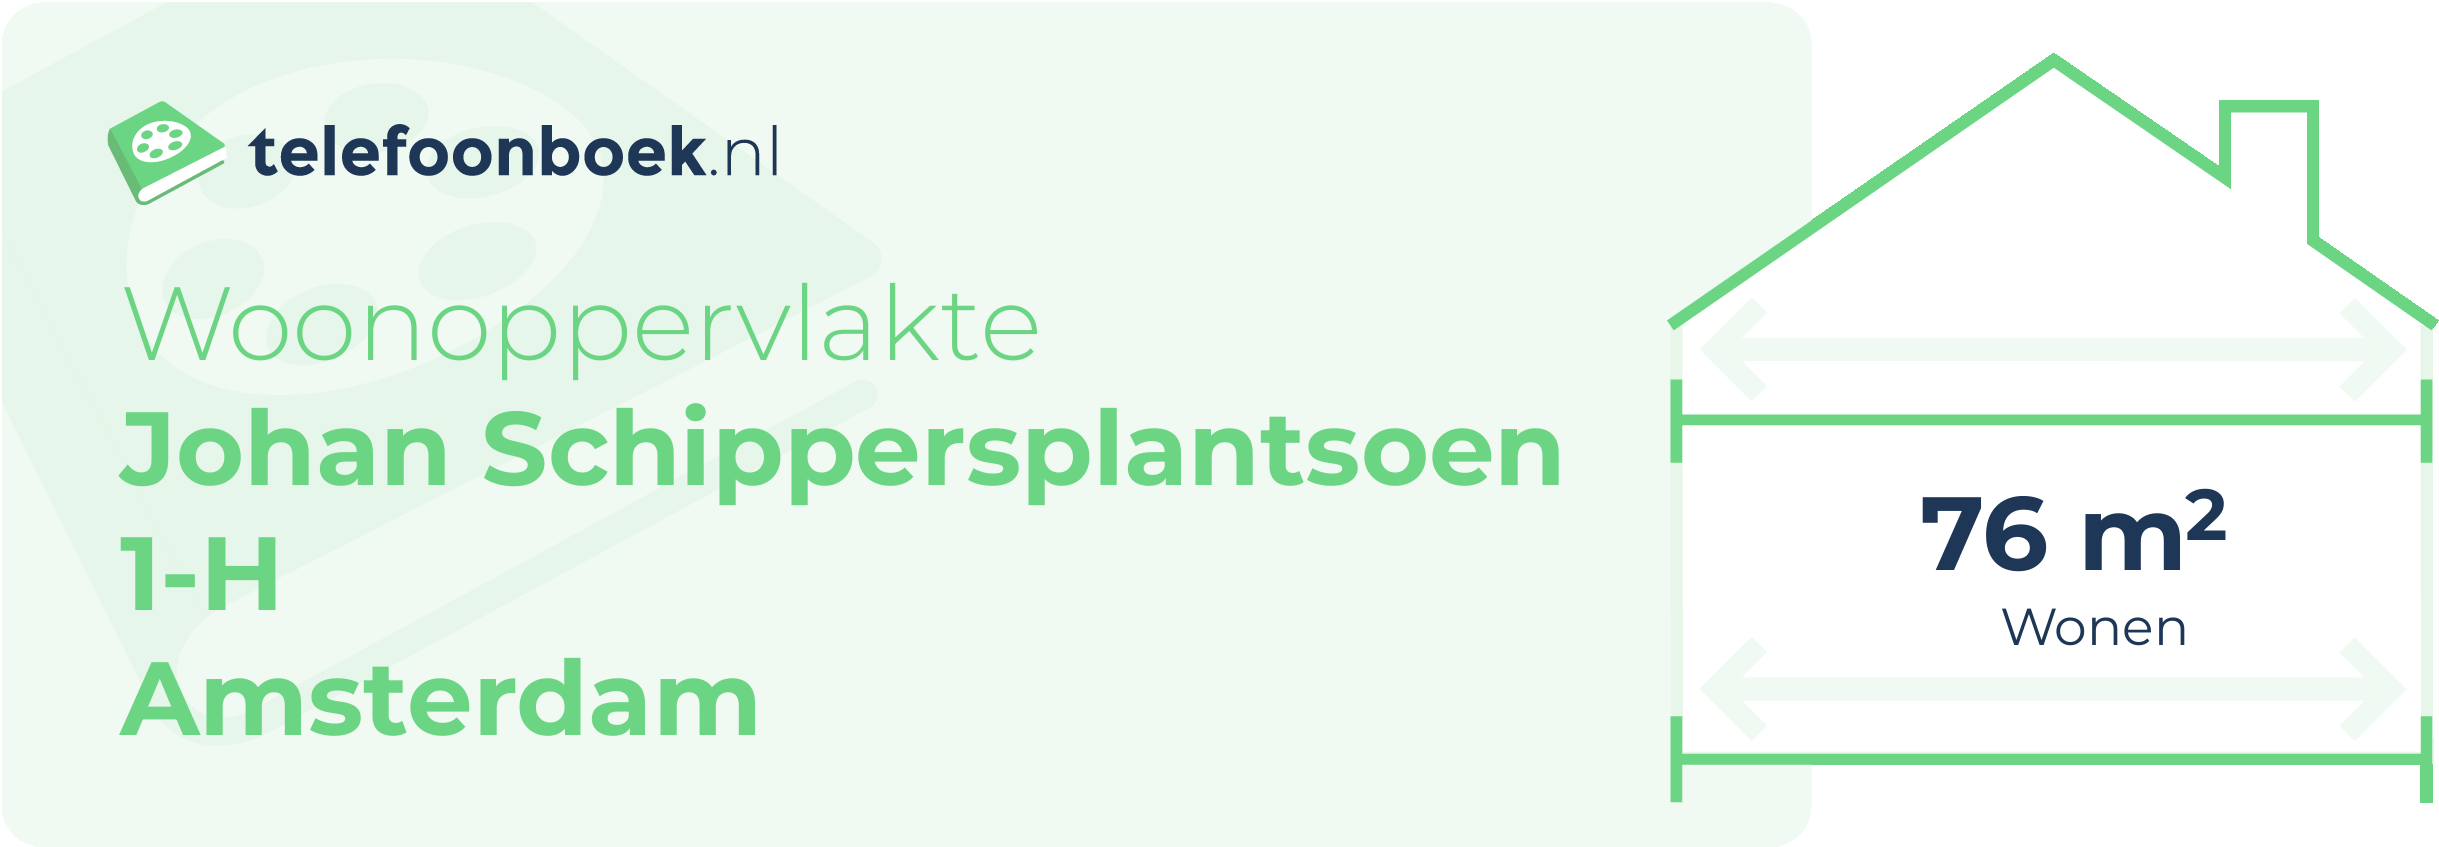 Woonoppervlakte Johan Schippersplantsoen 1-H Amsterdam